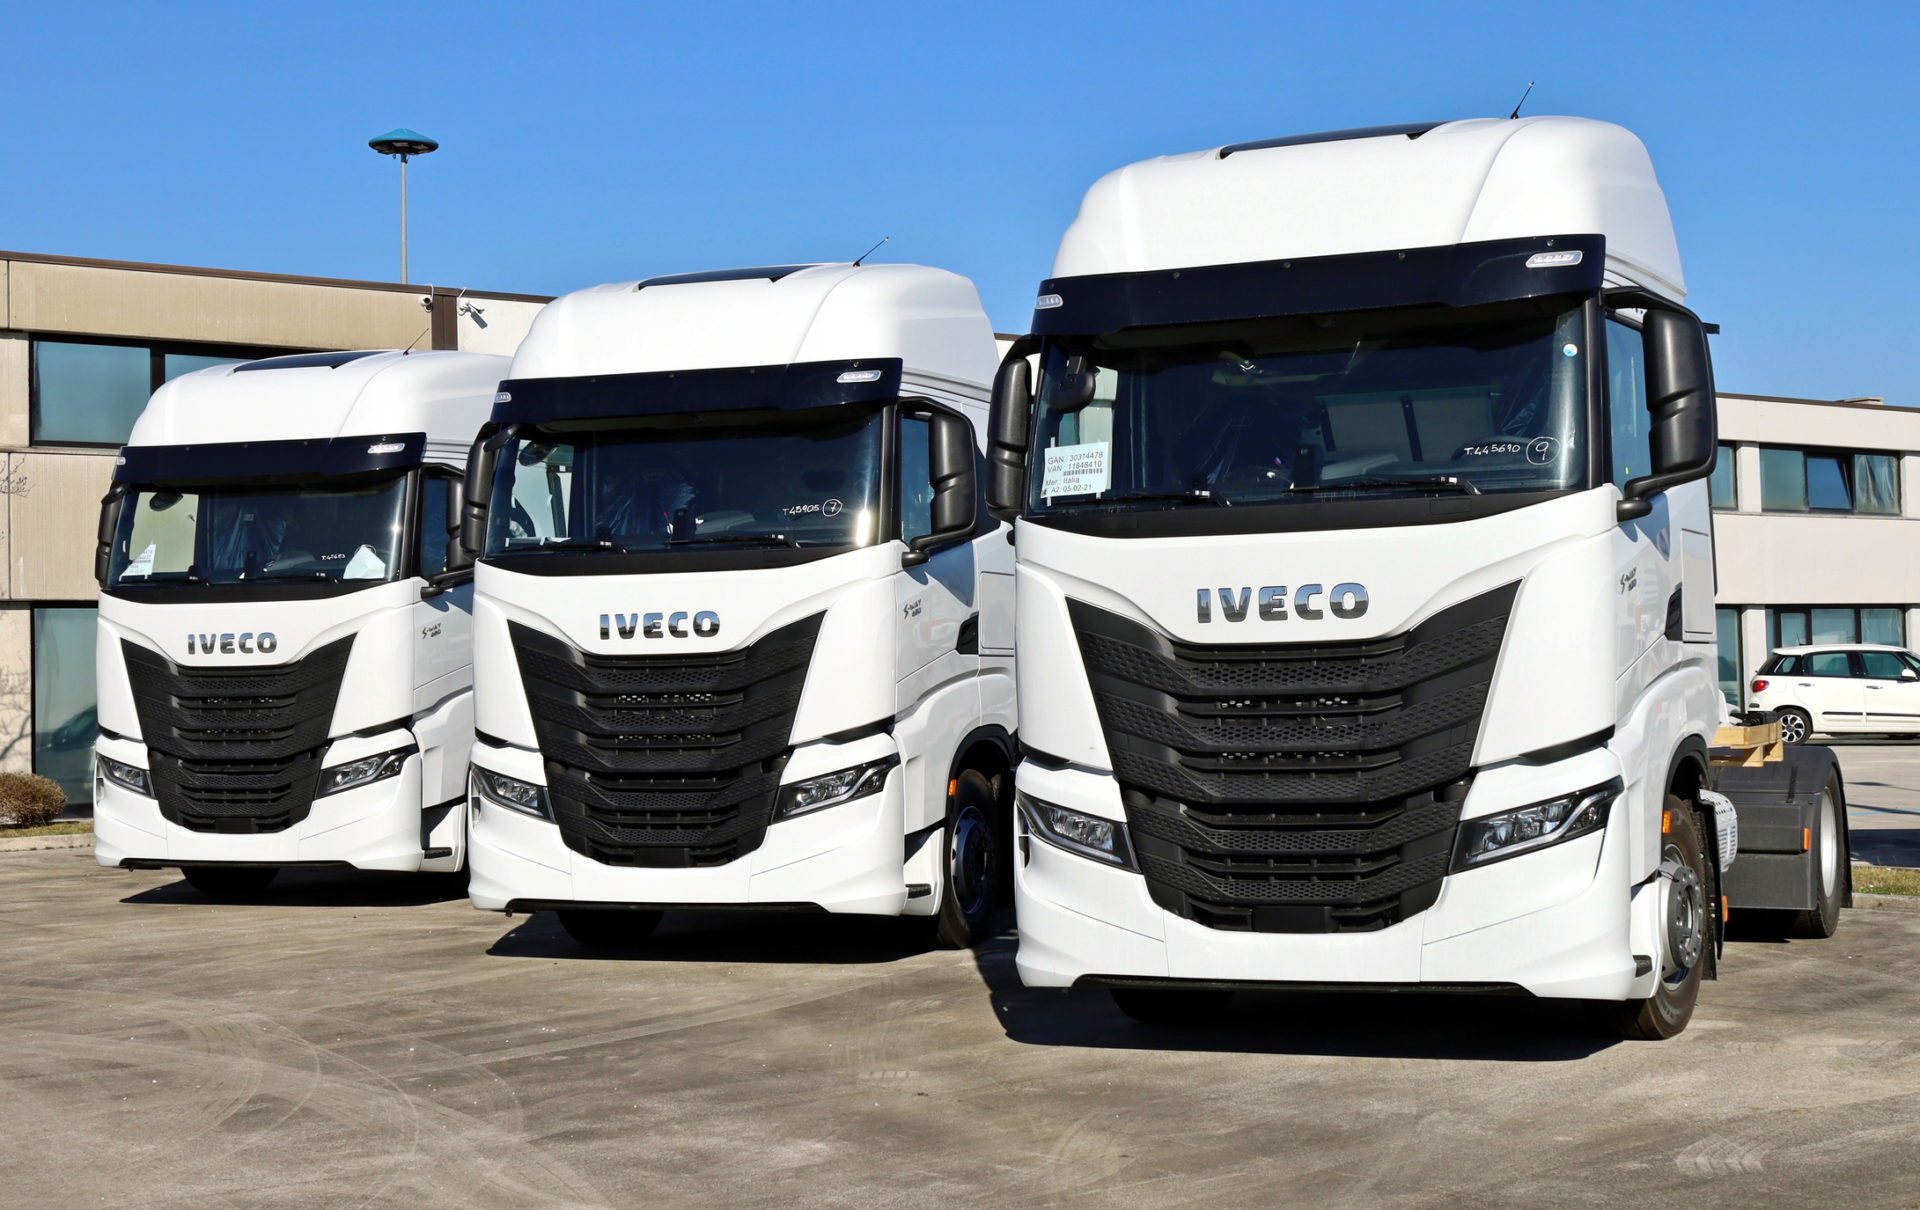 Você conhece a marca de caminhão Iveco